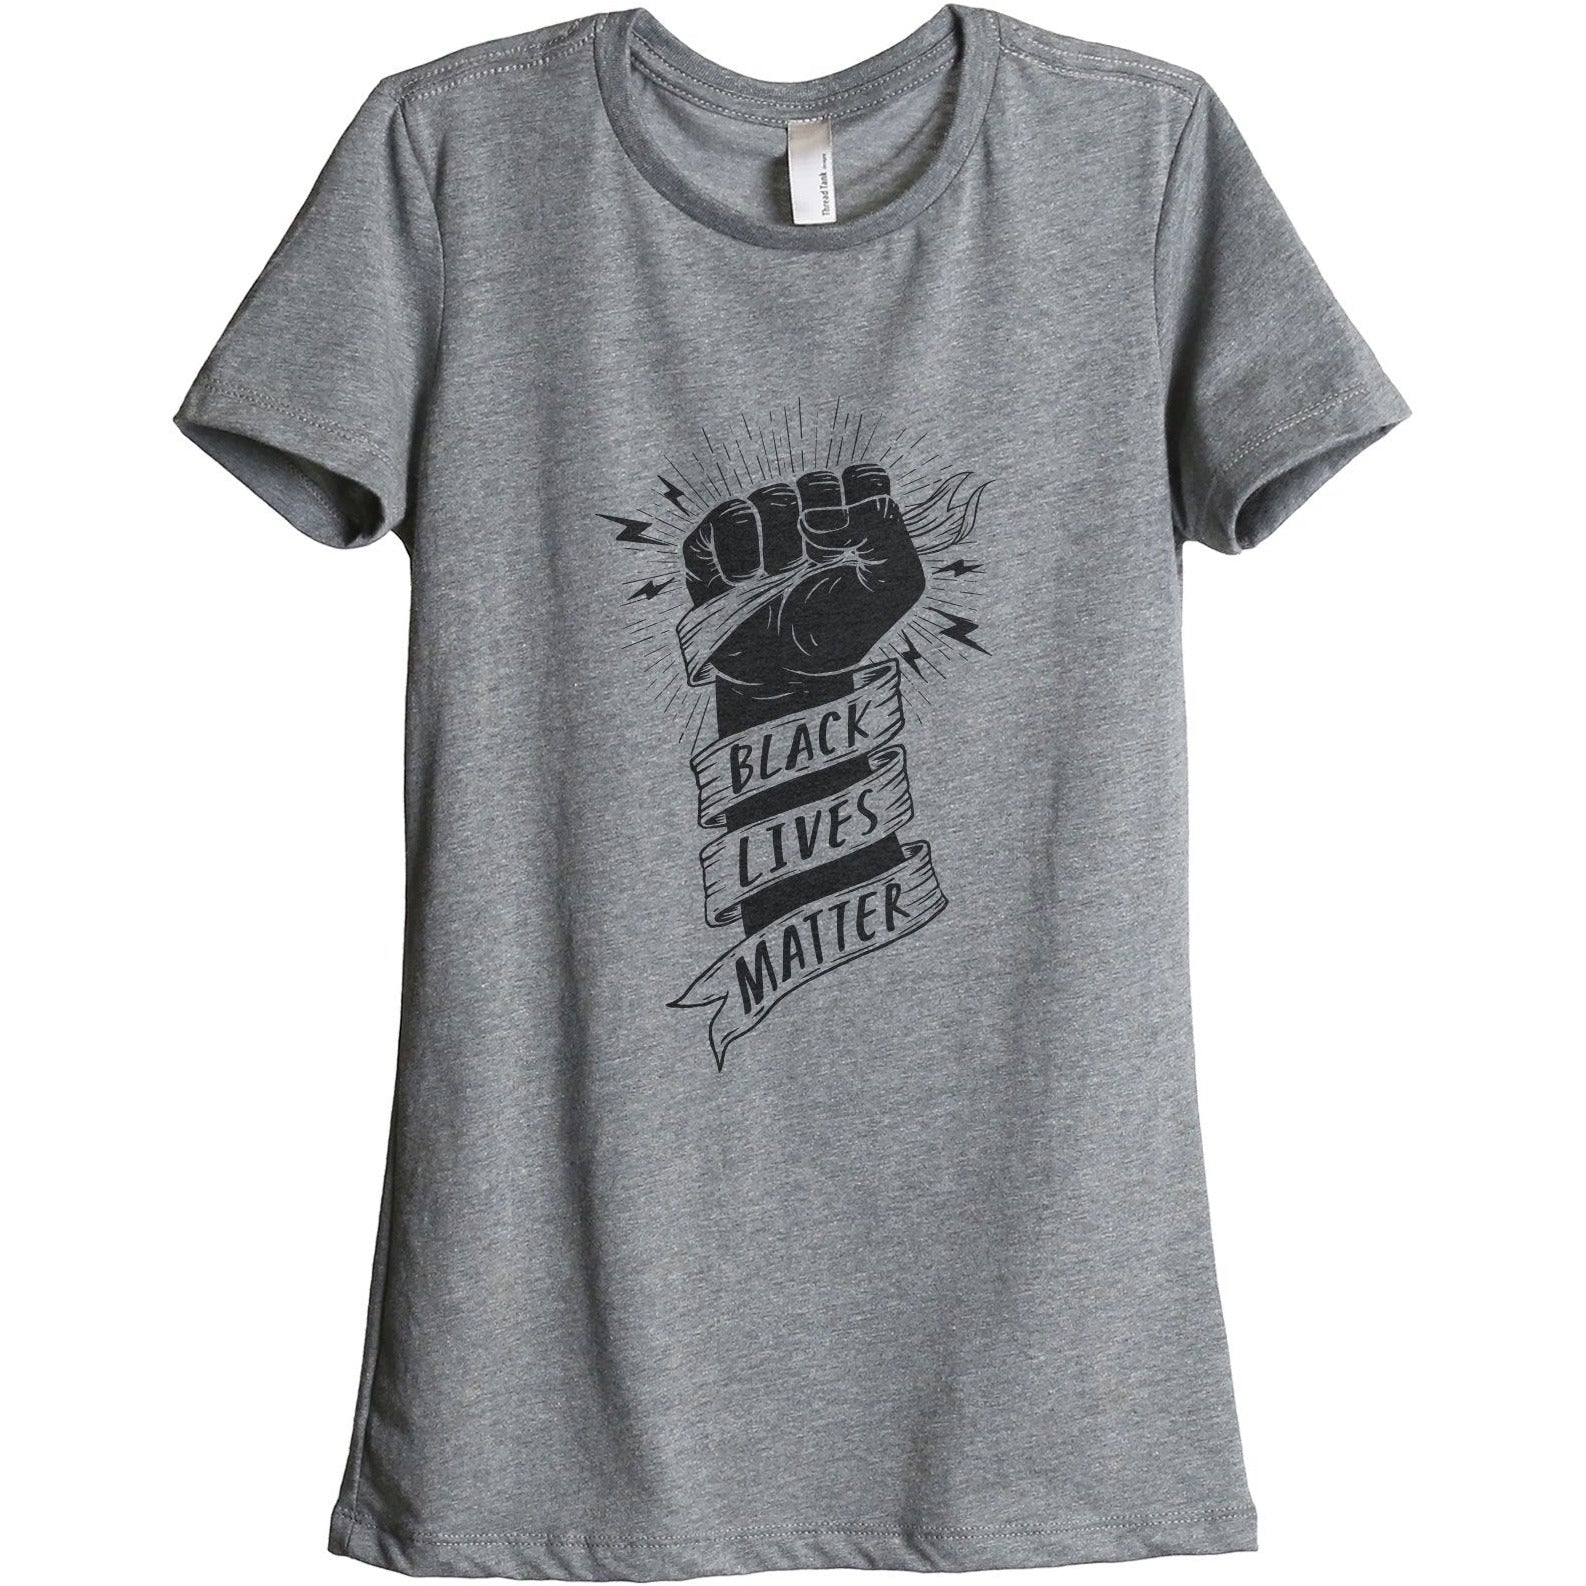 Black Lives Matter Women's Relaxed Crewneck T-Shirt Top Tee Heather Grey